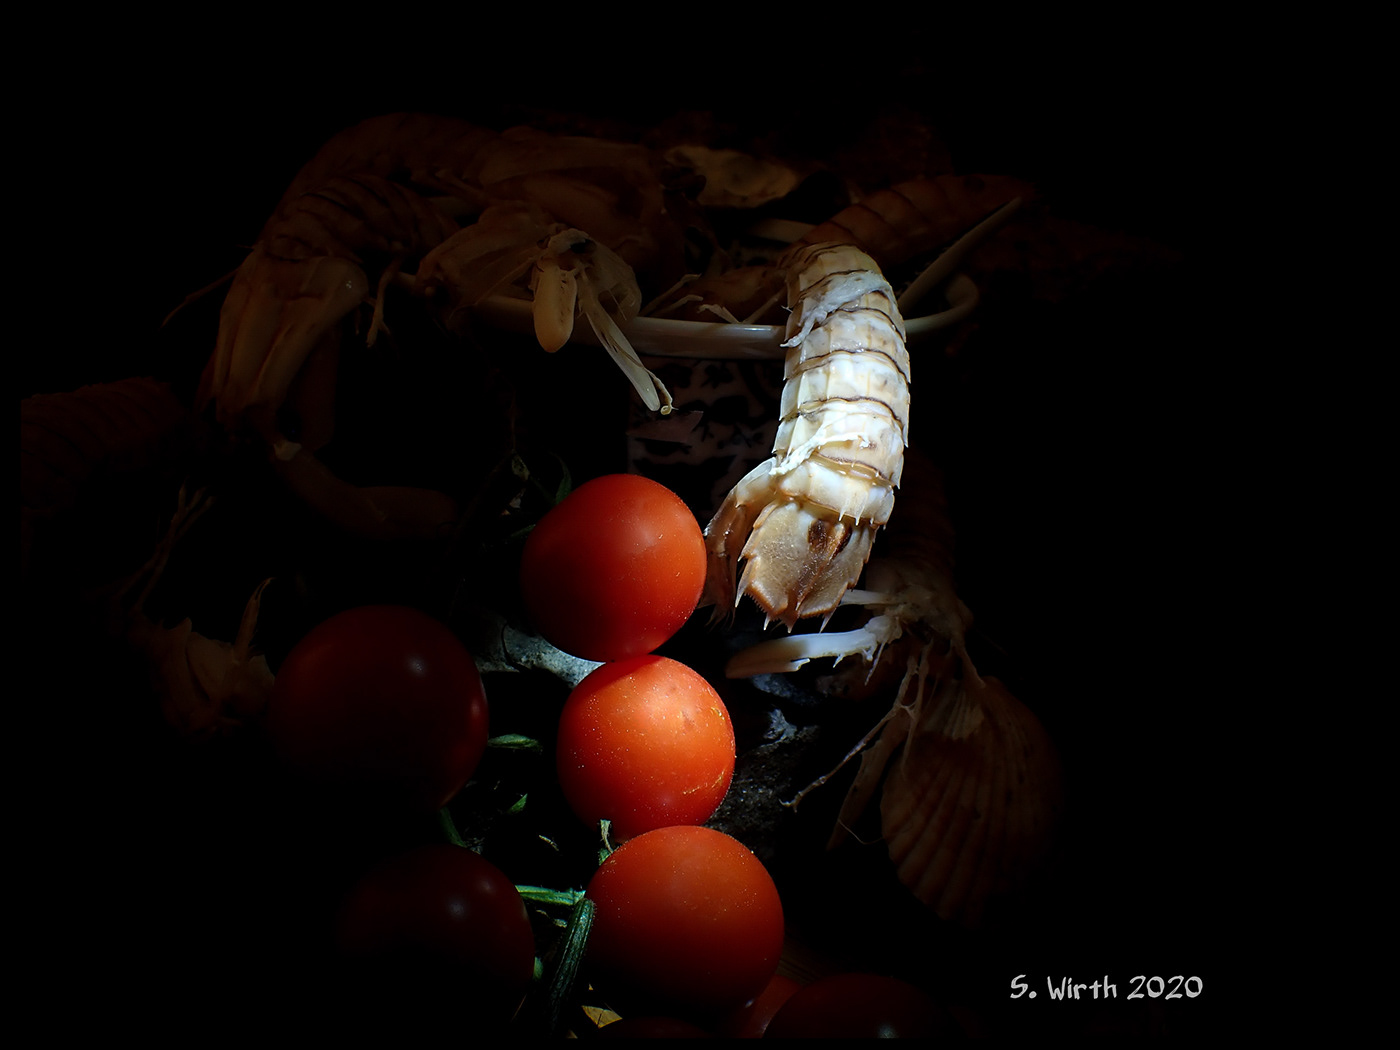 art berlin December 2020 light macro mantis shrimps Stefan F. Wirth stilllife